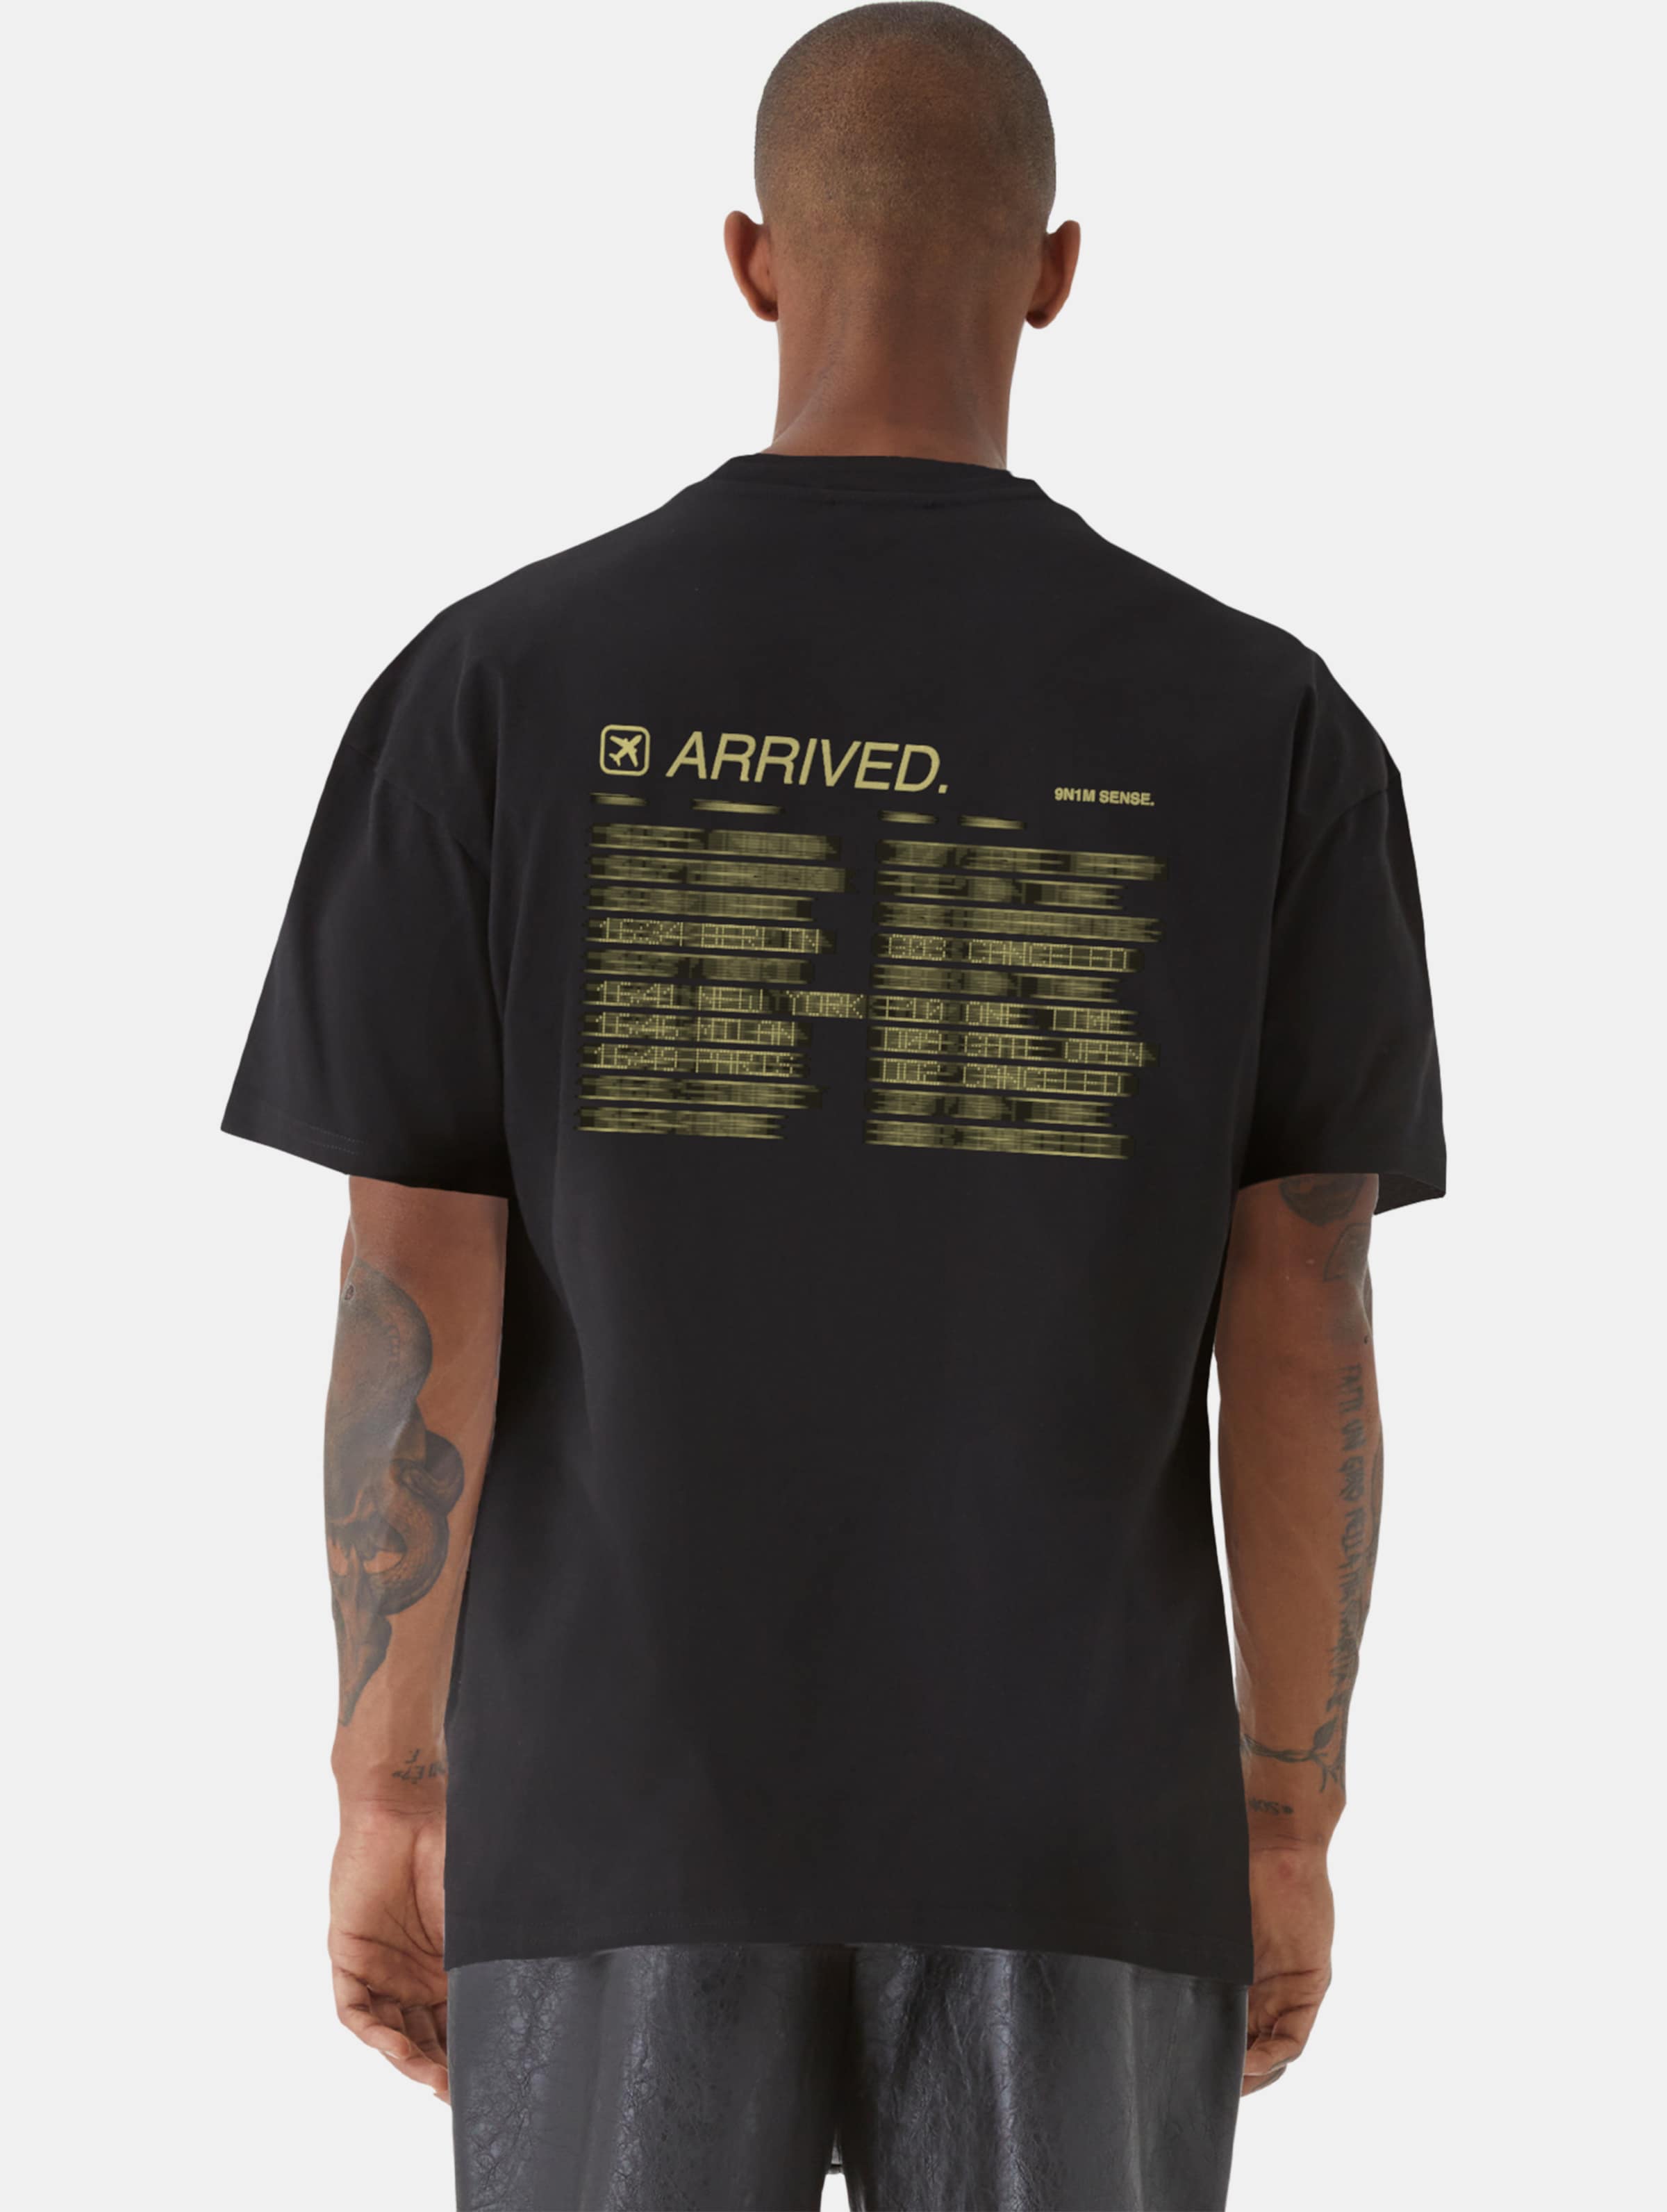 9N1M SENSE ARRIVED T-Shirt Männer,Unisex op kleur zwart, Maat XXL